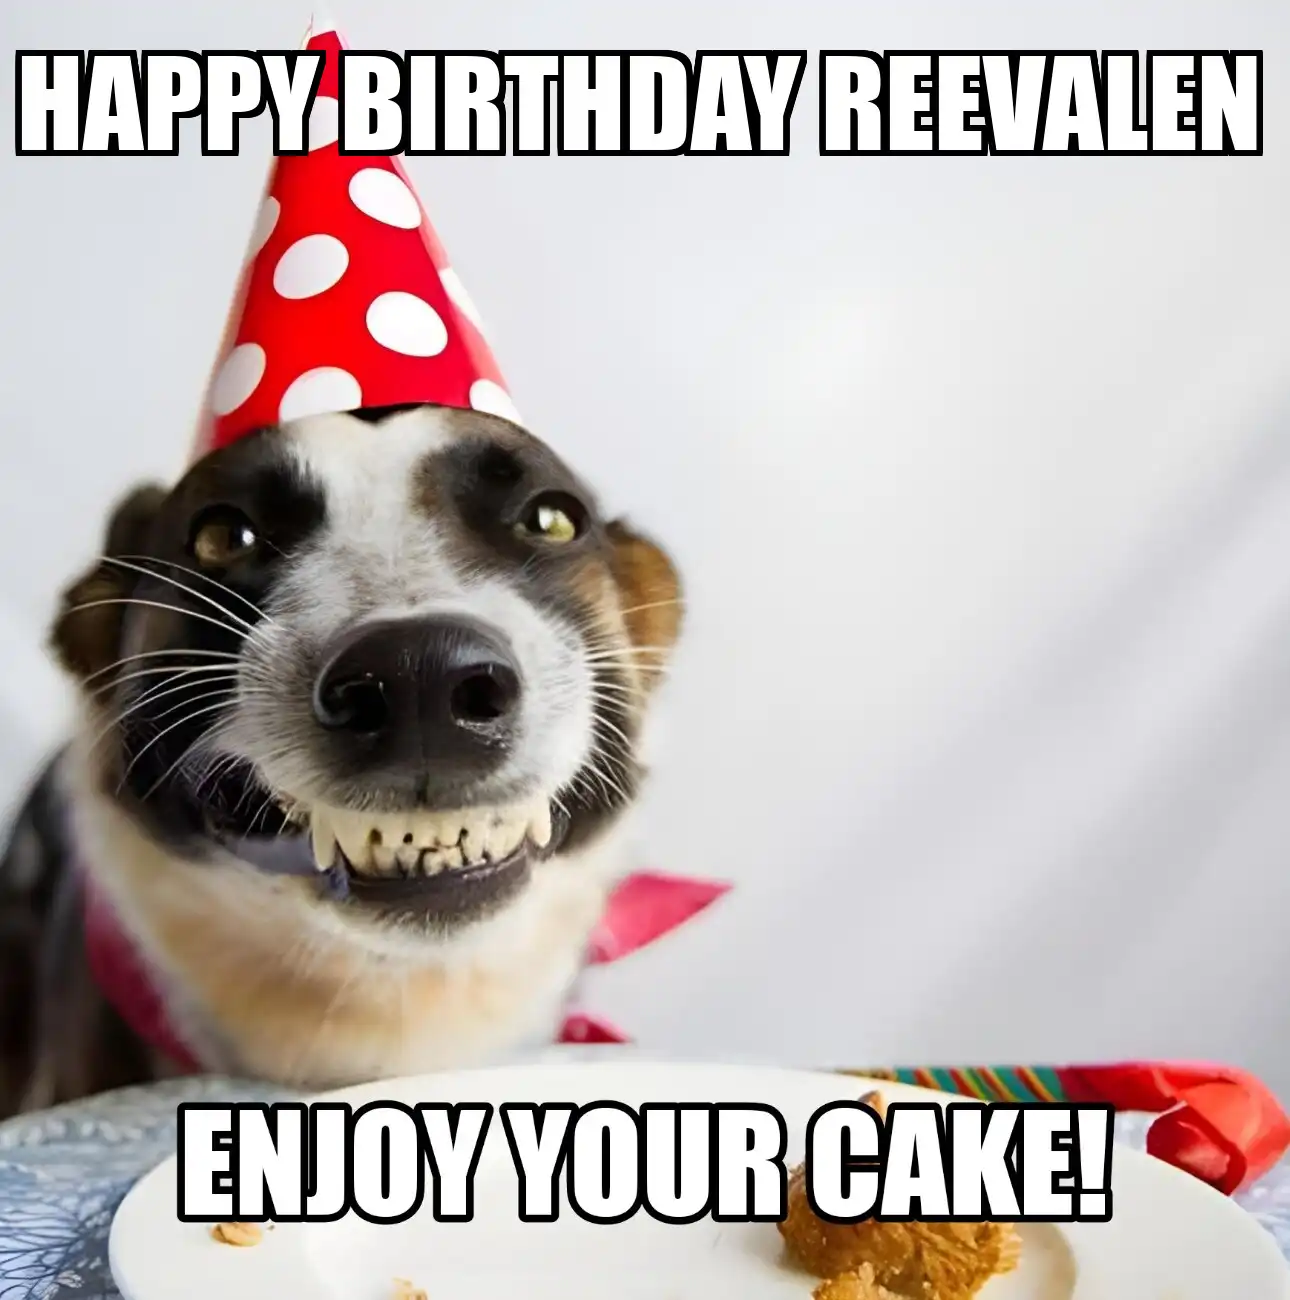 Happy Birthday Reevalen Enjoy Your Cake Dog Meme